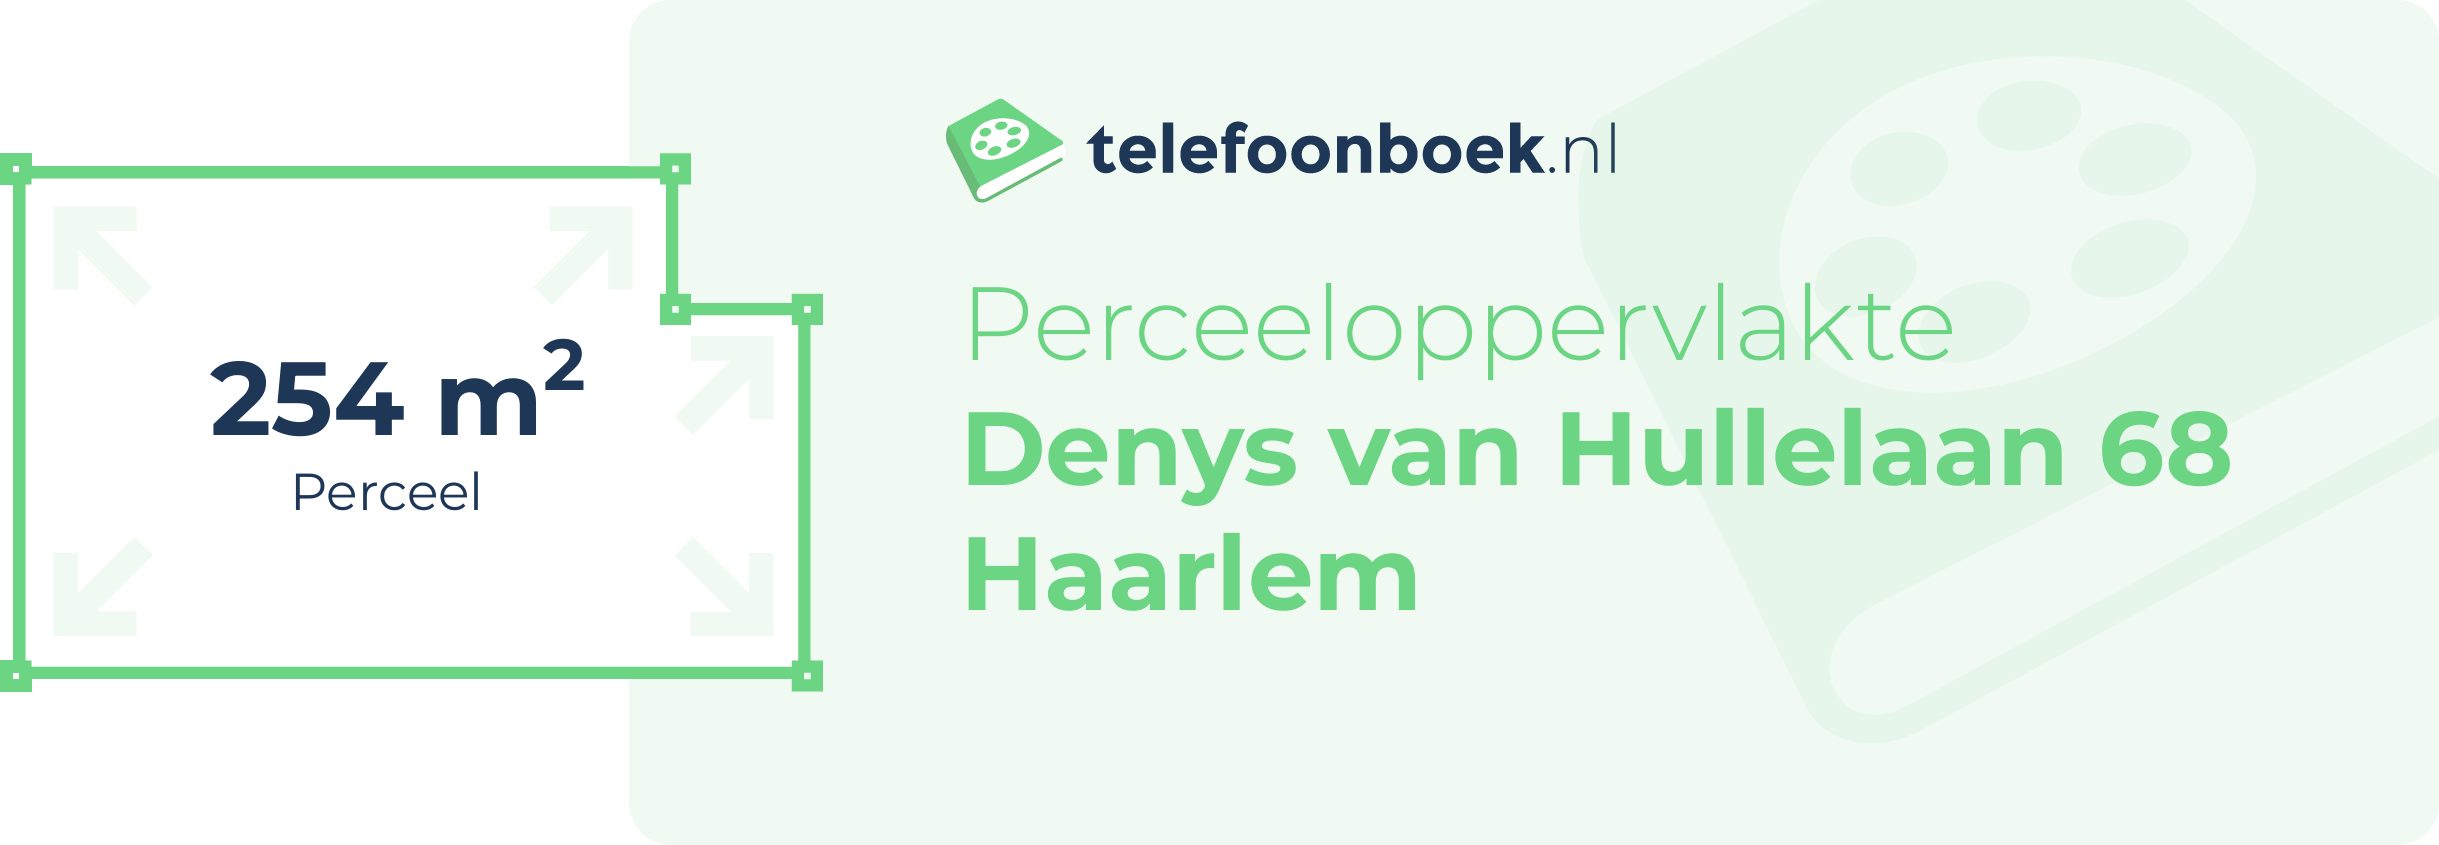 Perceeloppervlakte Denys Van Hullelaan 68 Haarlem